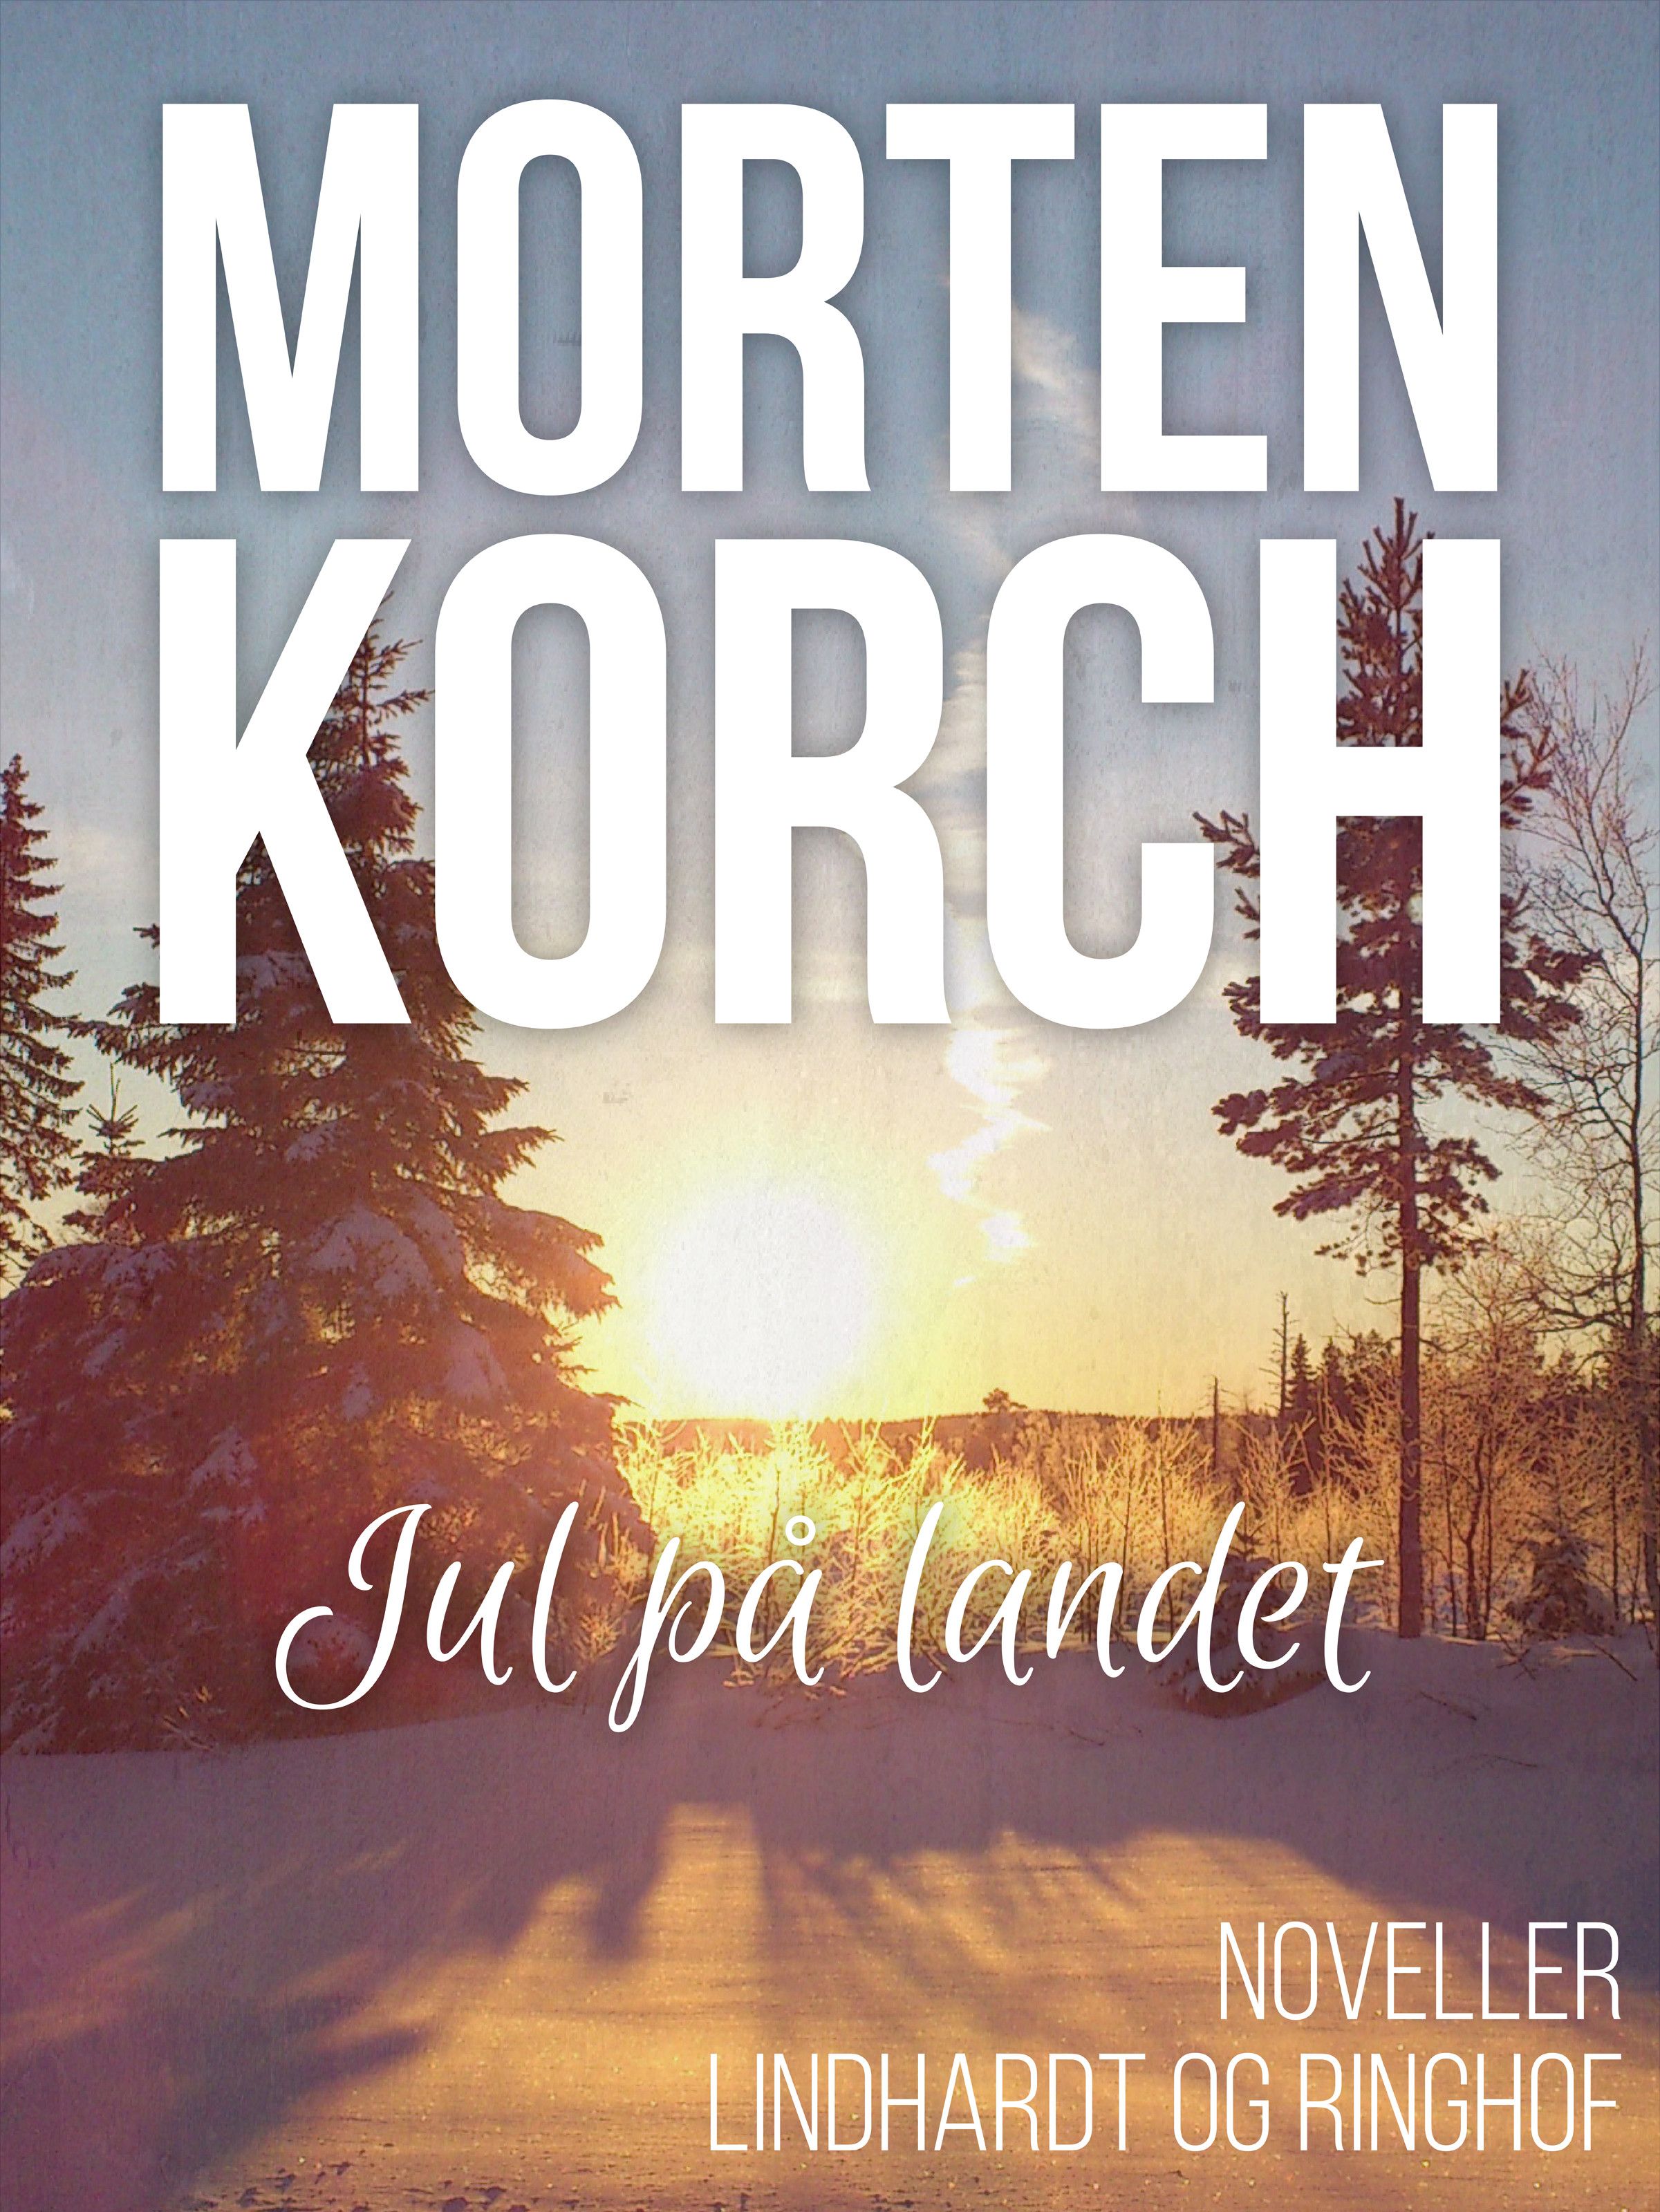 Jul på landet, ljudbok av Morten Korch